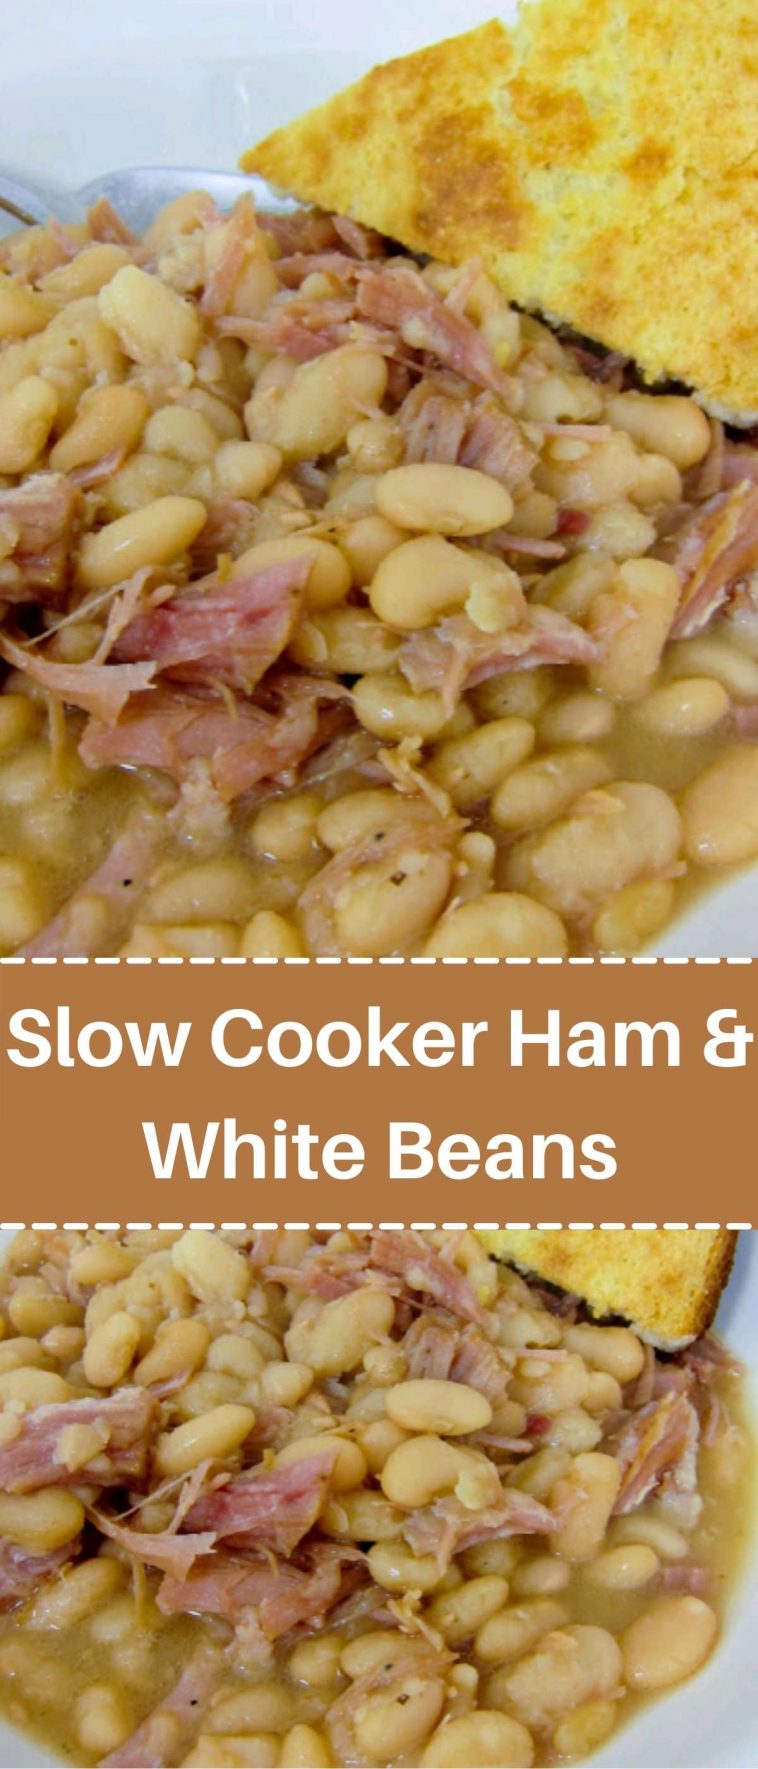 Slow Cooker Ham & White Beans